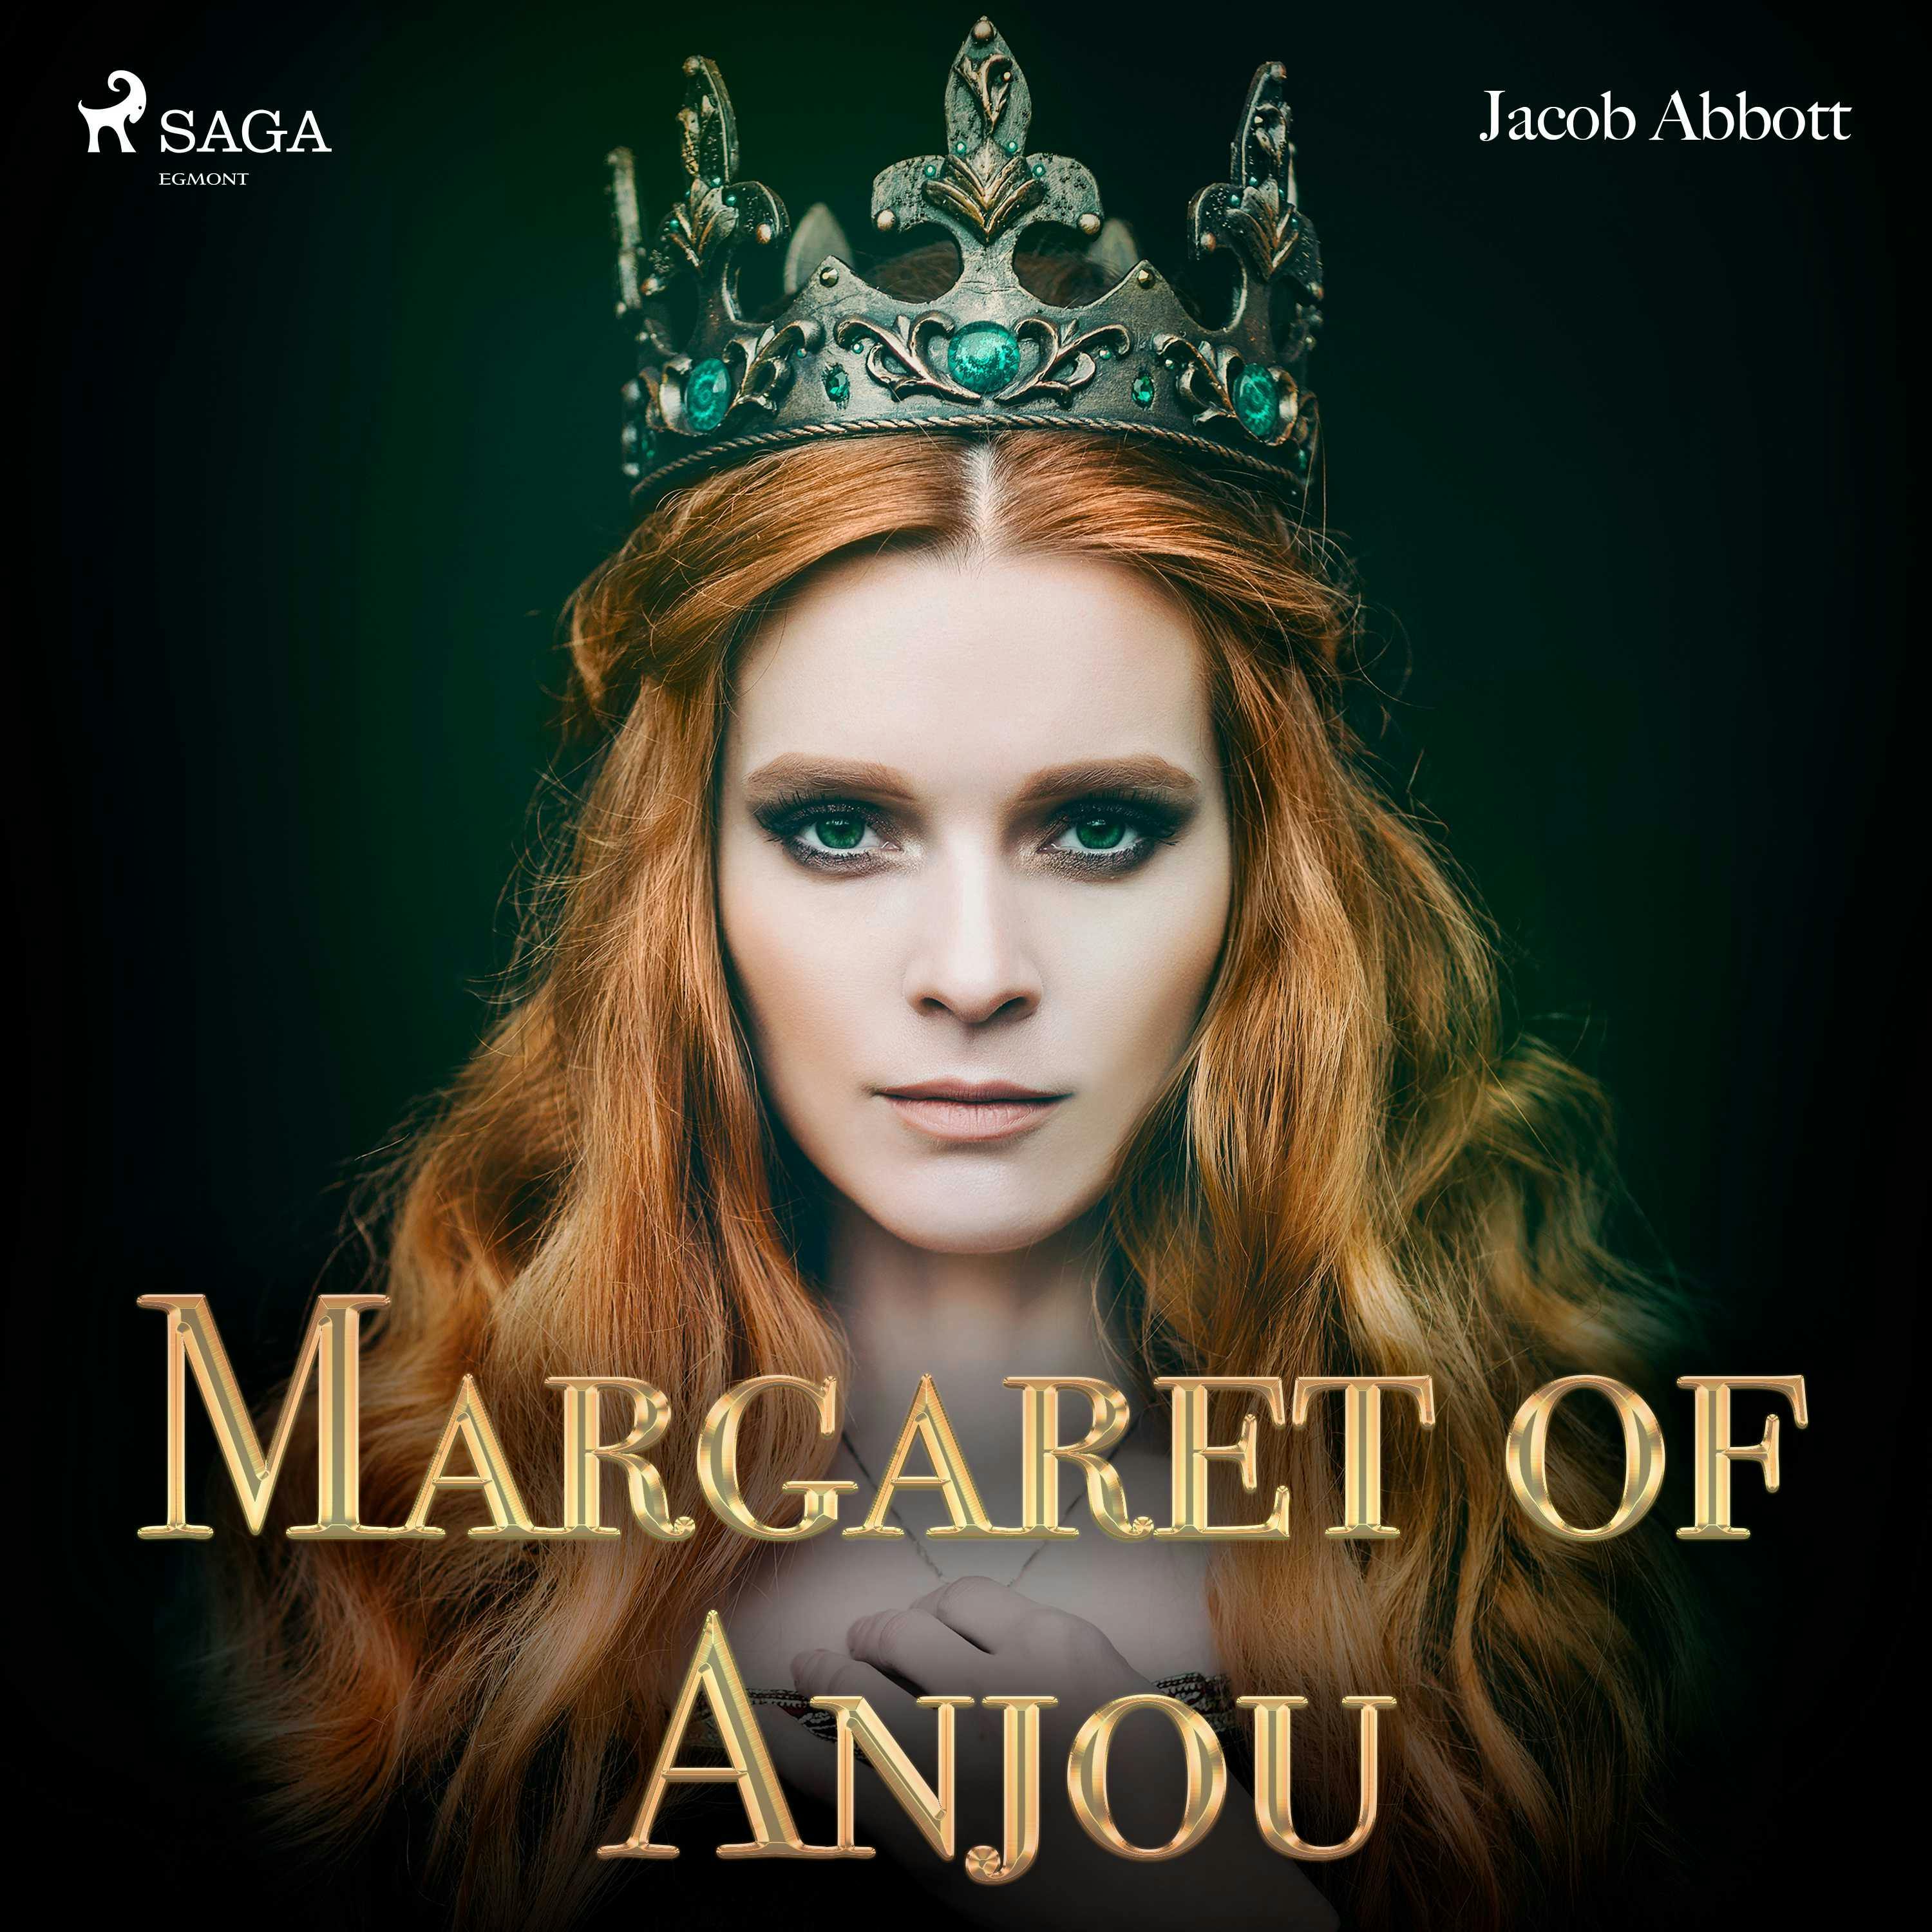 Margaret of Anjou - undefined